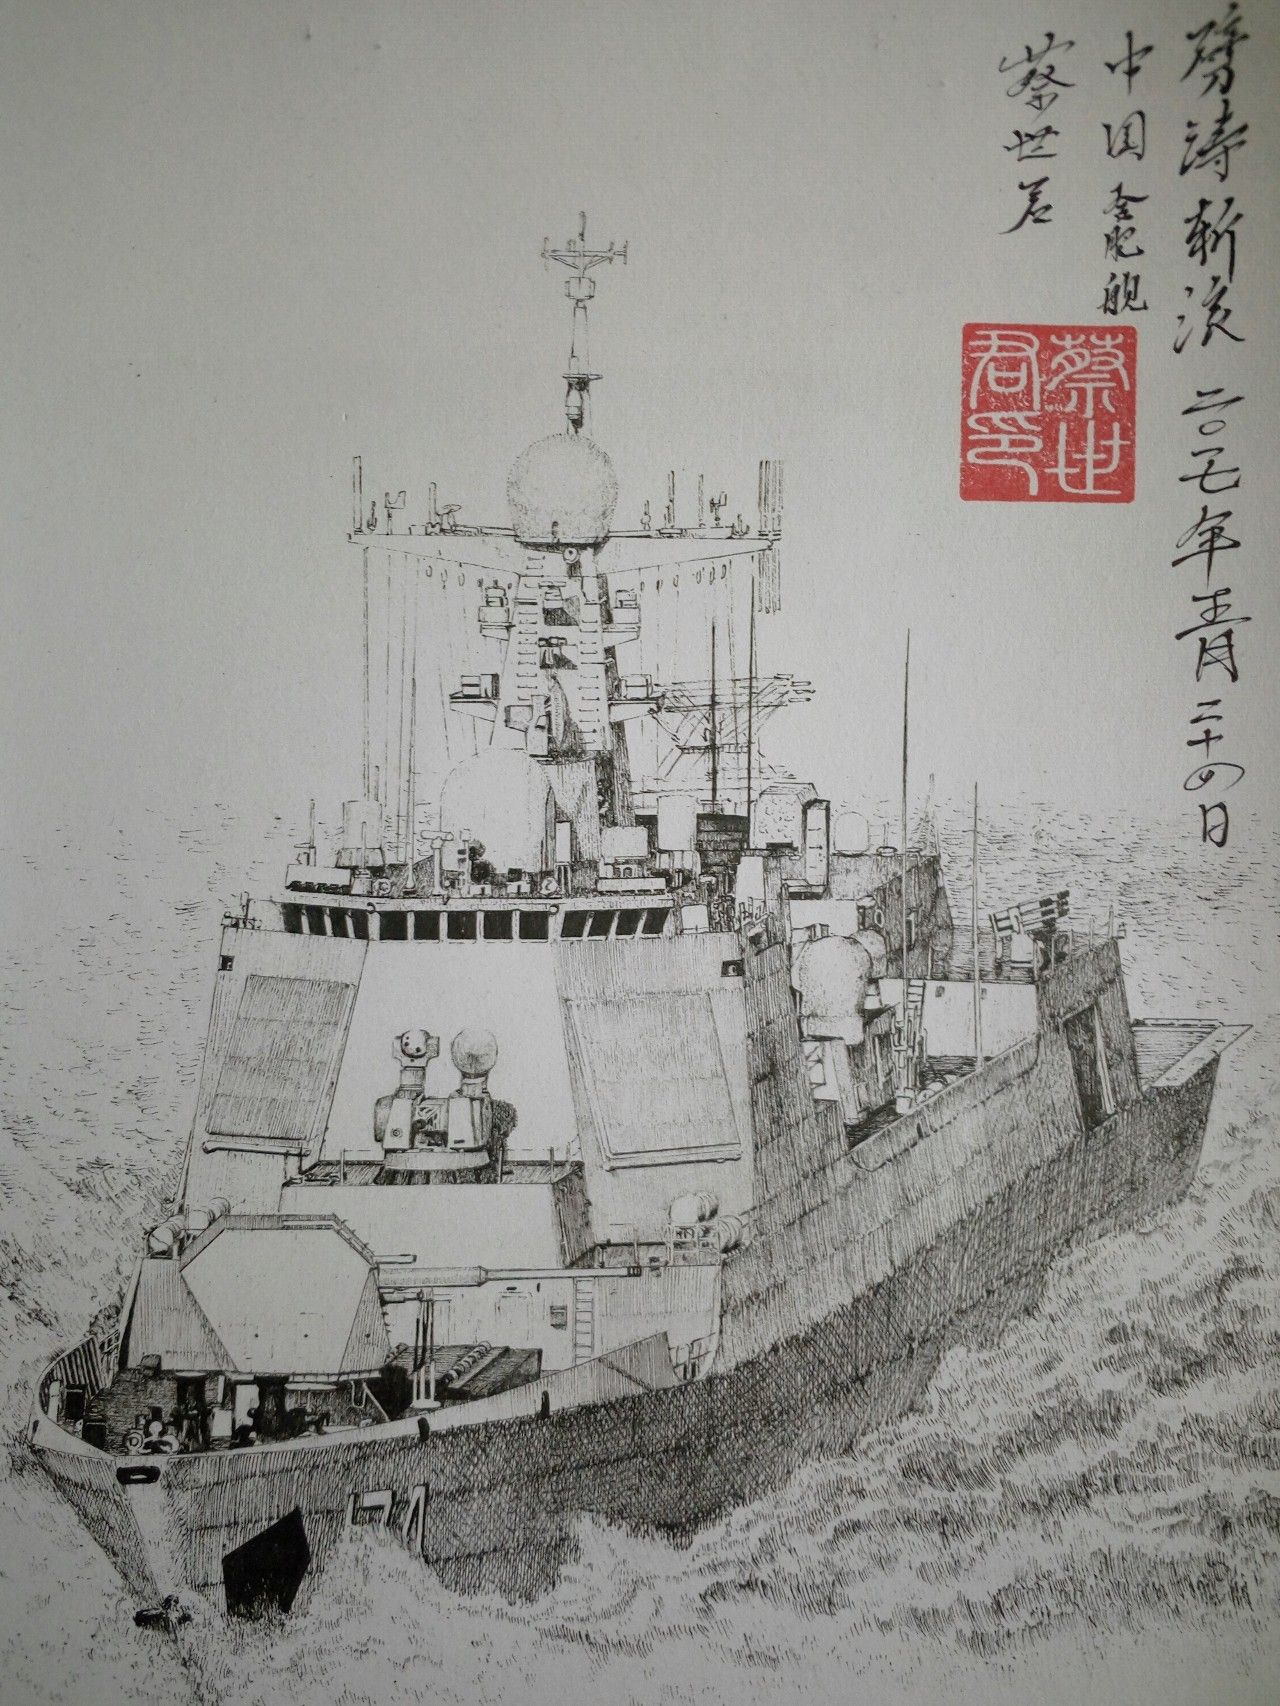 ——蔡世君 中国海军 一支笔,一张纸,一架战机跃然纸上.